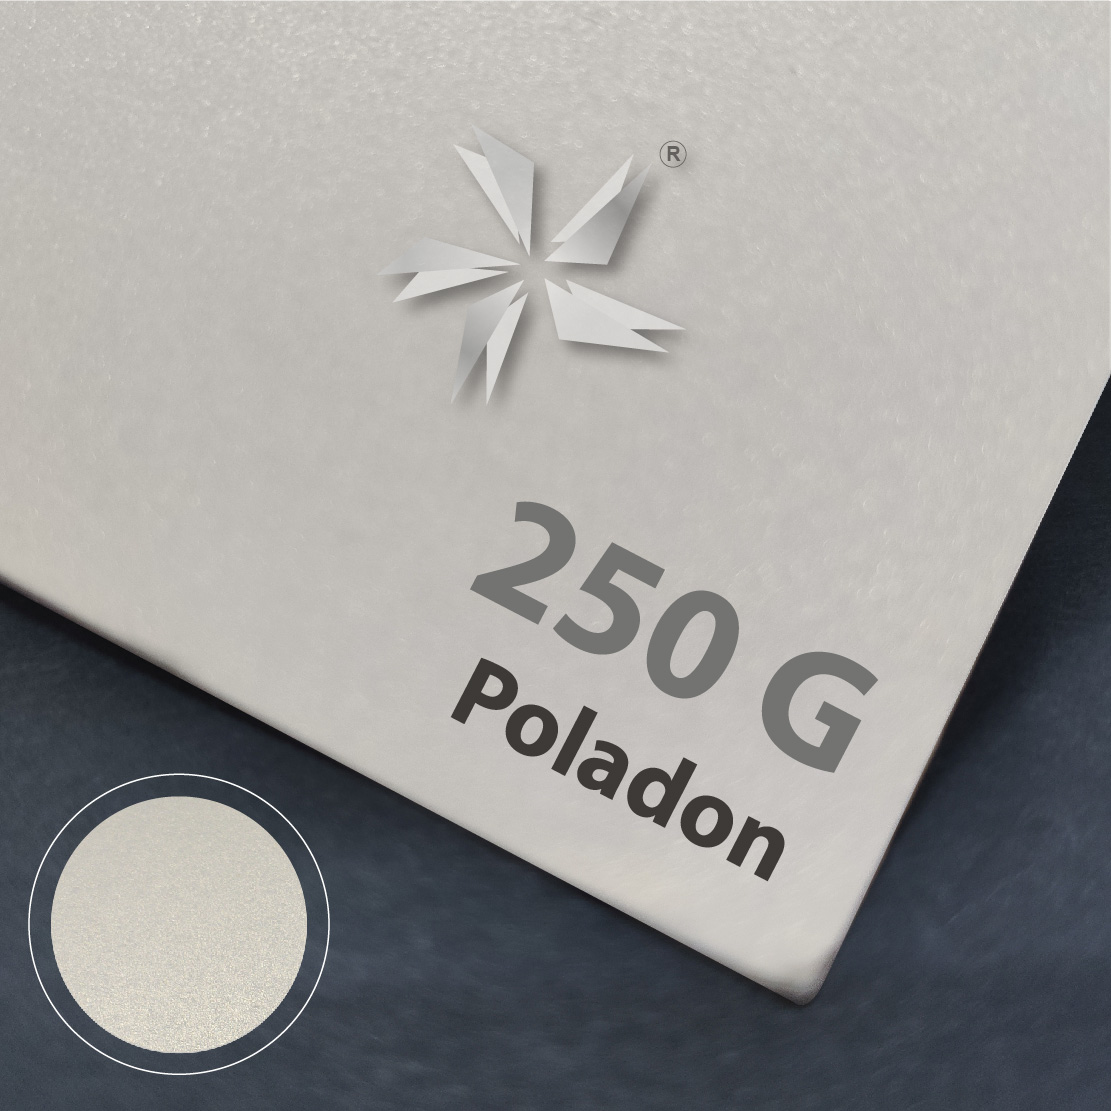 Metallic Gold Poladon Card 250g (Cream Color Metalic Surface)